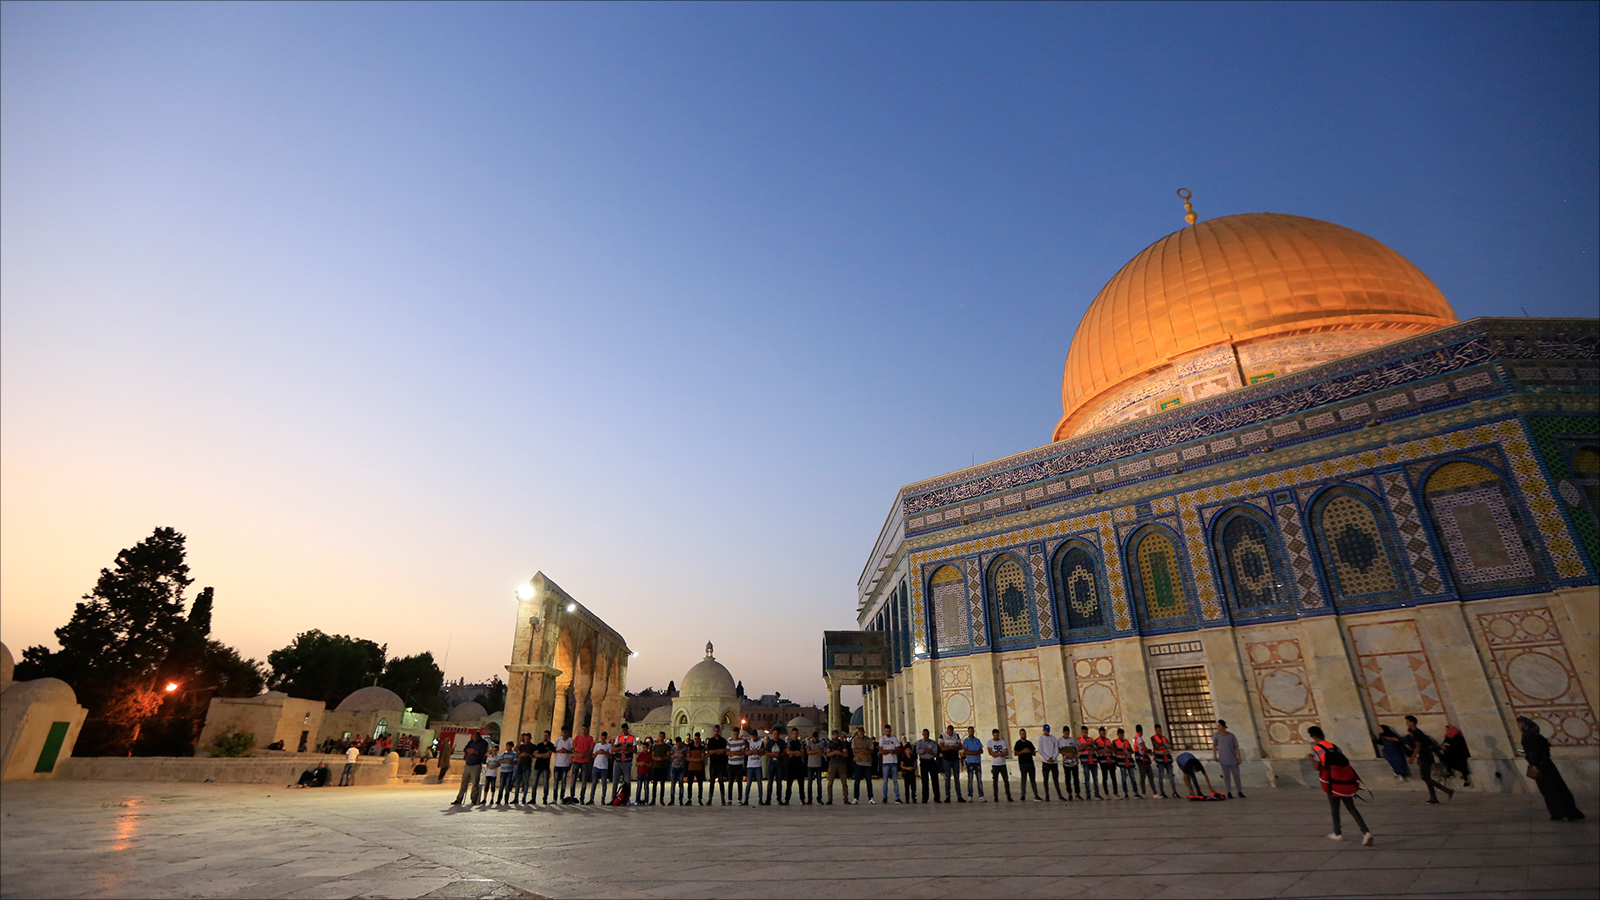 هل الإجماع على أنّ المسجد الأقصى هو هذا الذي بفلسطين وتعرفه الأمة عبر أكثر من ألف وأربعمائة عام؛ مضادٌ للإبداع؟ وأي إبداع ذلك الذي يتعطل من الإقرار بهذه الحقيقة التاريخية!